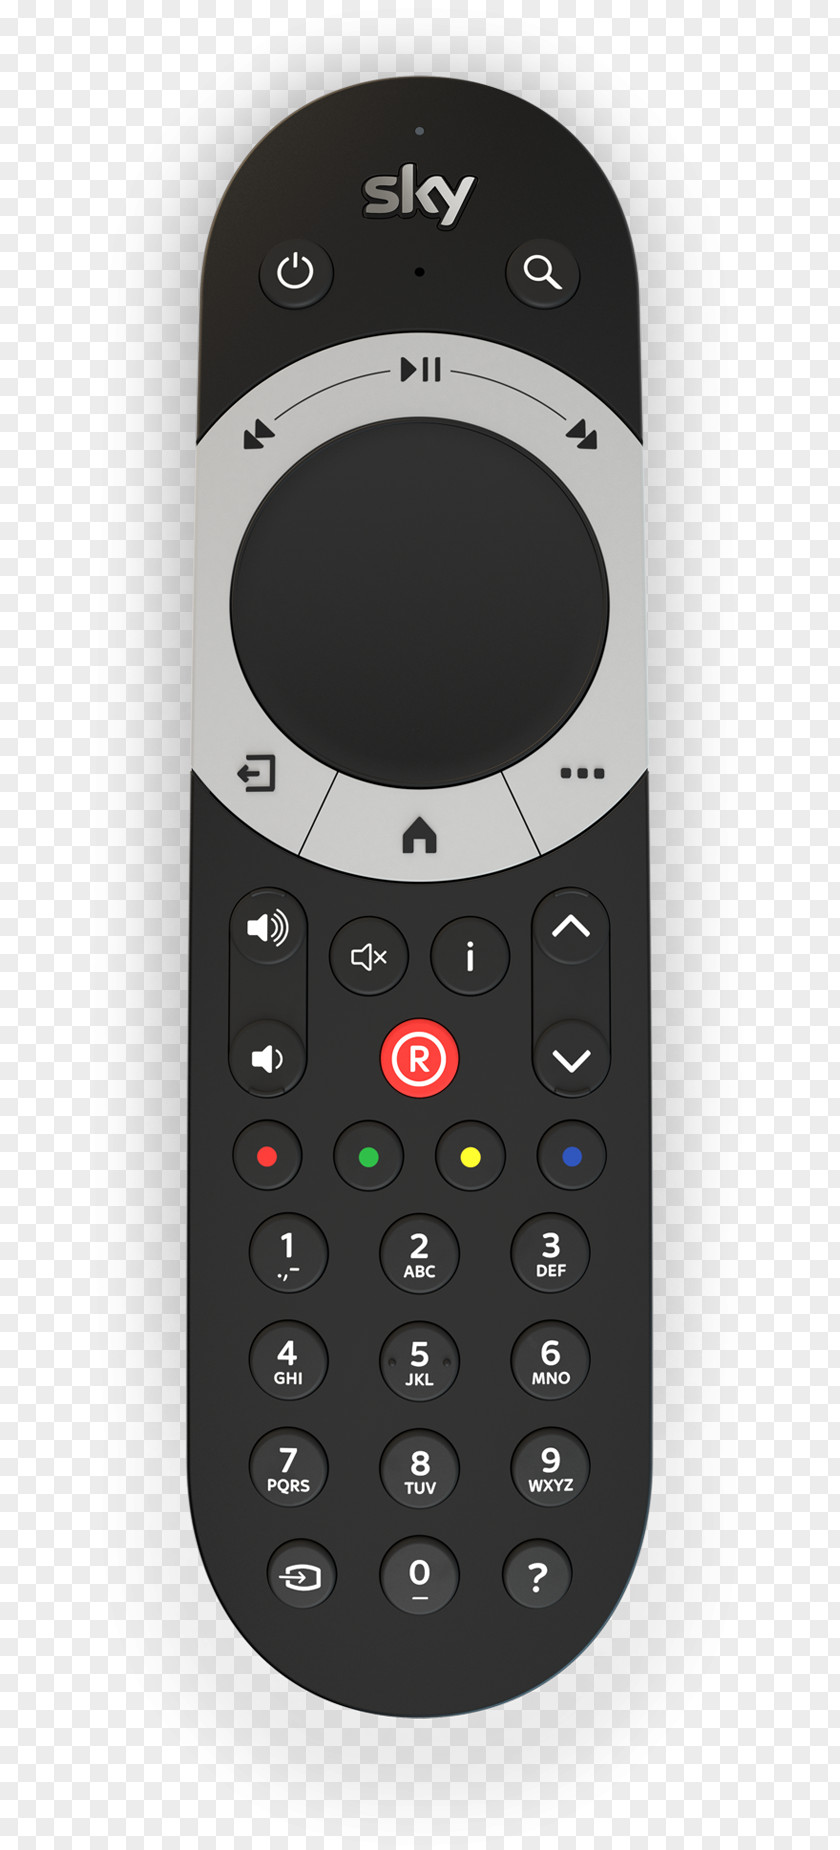 Q & A Remote Controls Sky UK Sky+ HD Set-top Box Digibox PNG